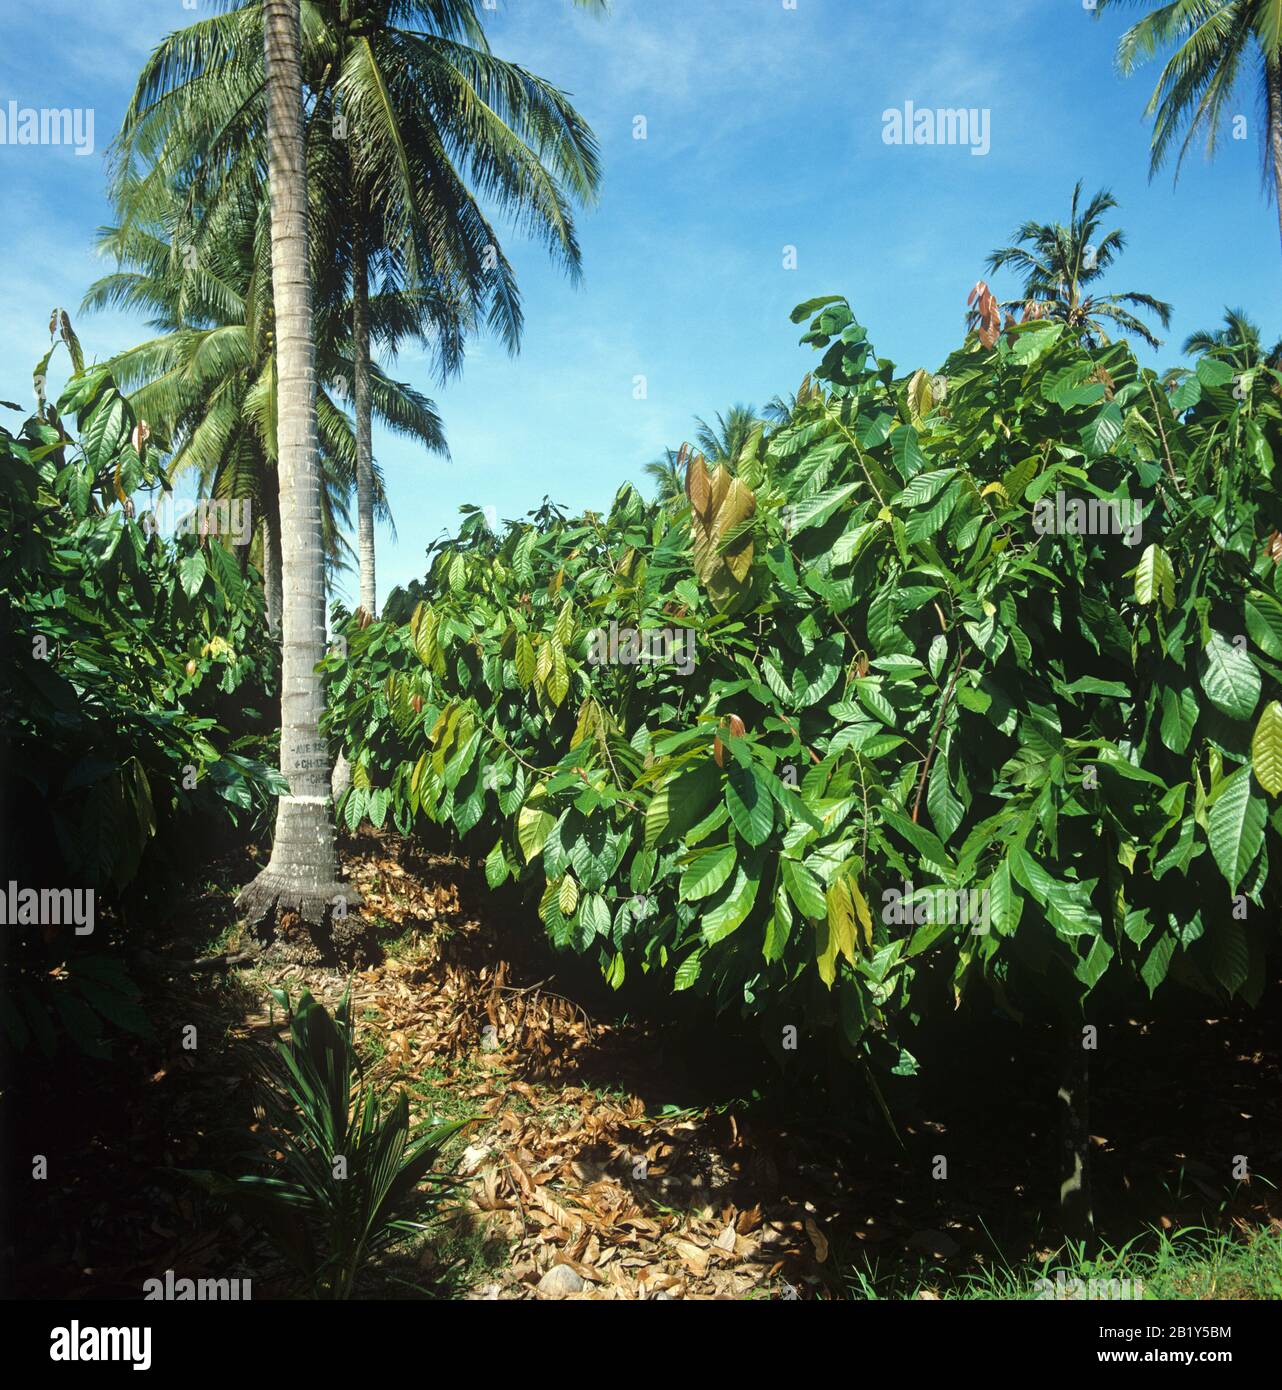 Mature cocoa (Theobroma cacao) plantation under coconut shade trees, Mindanao, Philippines, February Stock Photo